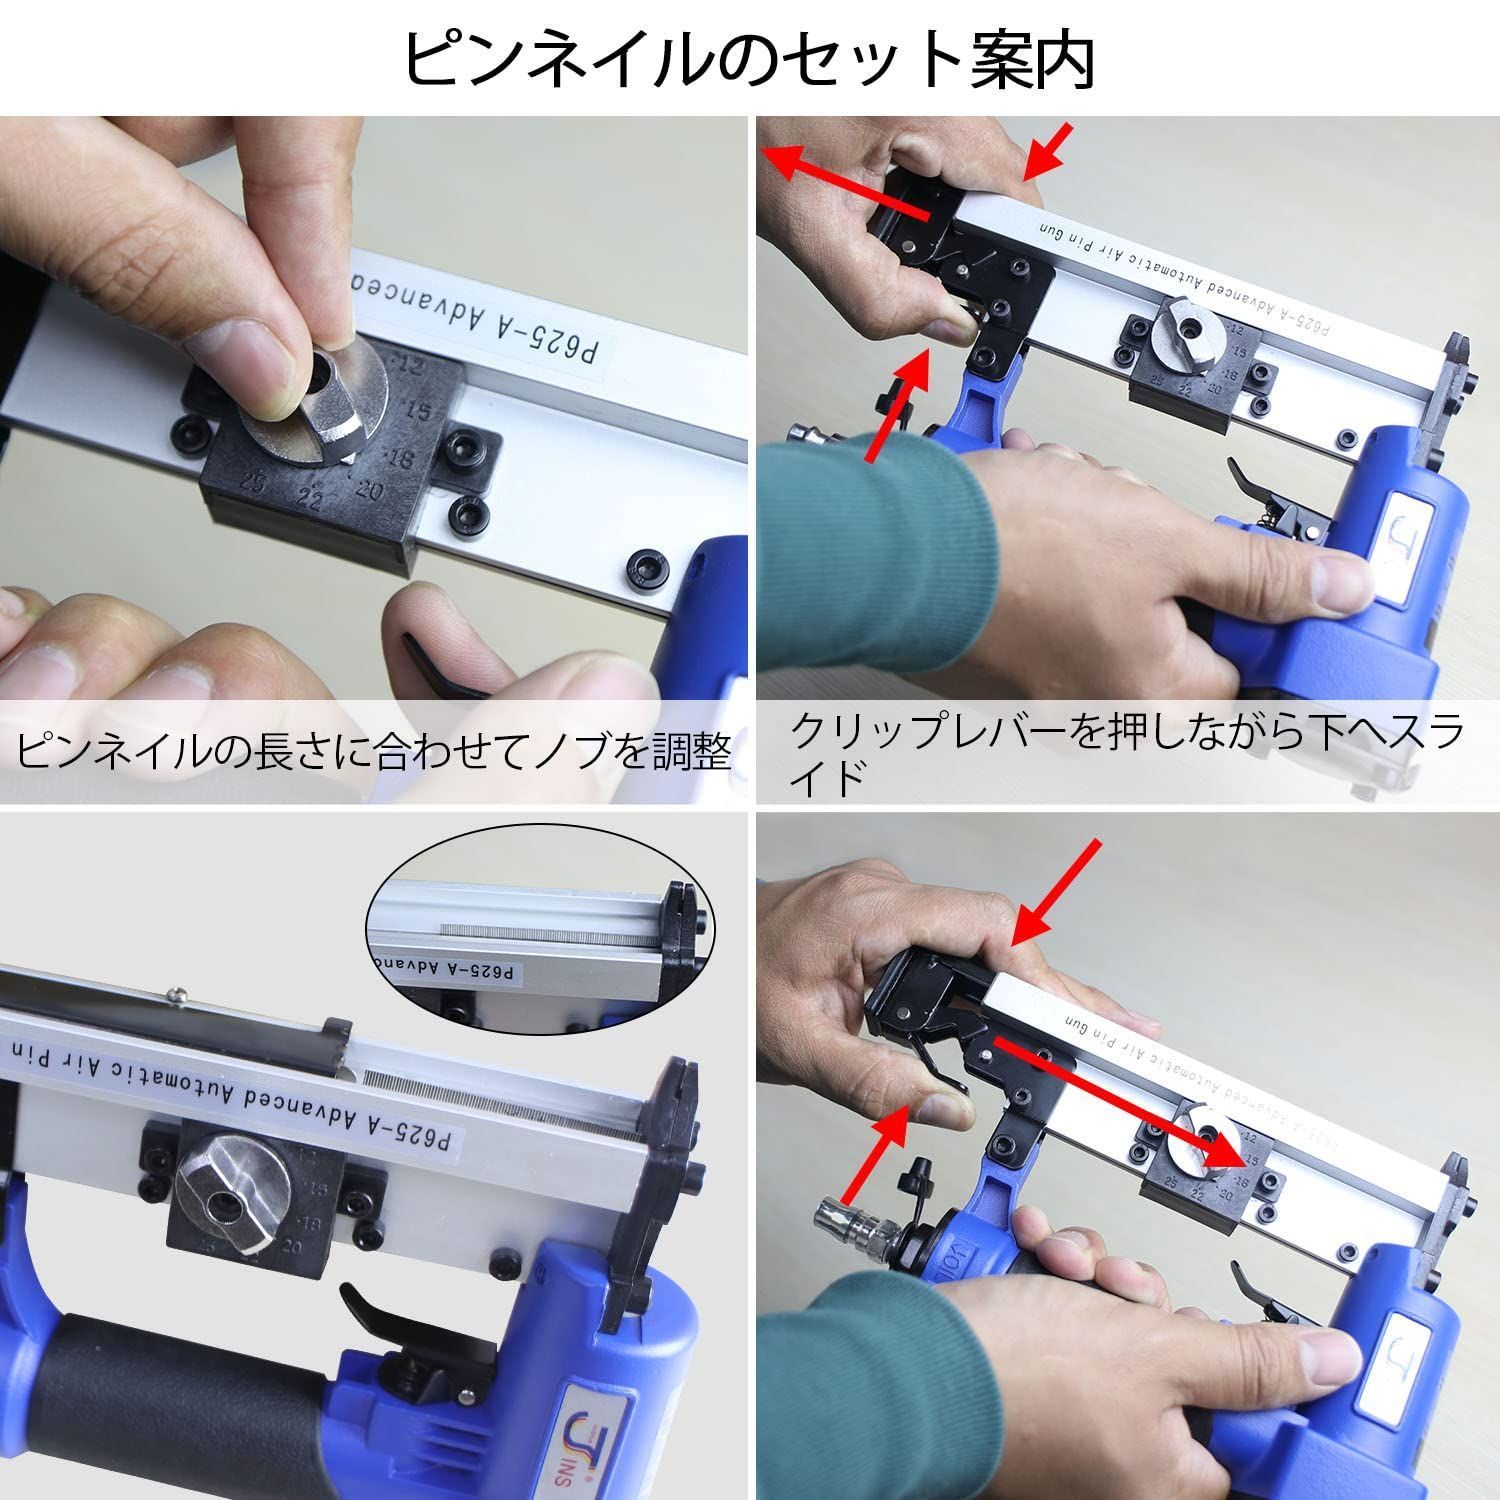 【新着商品】Sutekus エアーピンタッカー エアピン釘打機 釘足長 12~25mm 仕上げ用 幅0.6mmピンネイル使用 常圧 ピンネイル600本 木工ツール 日本語取説付き